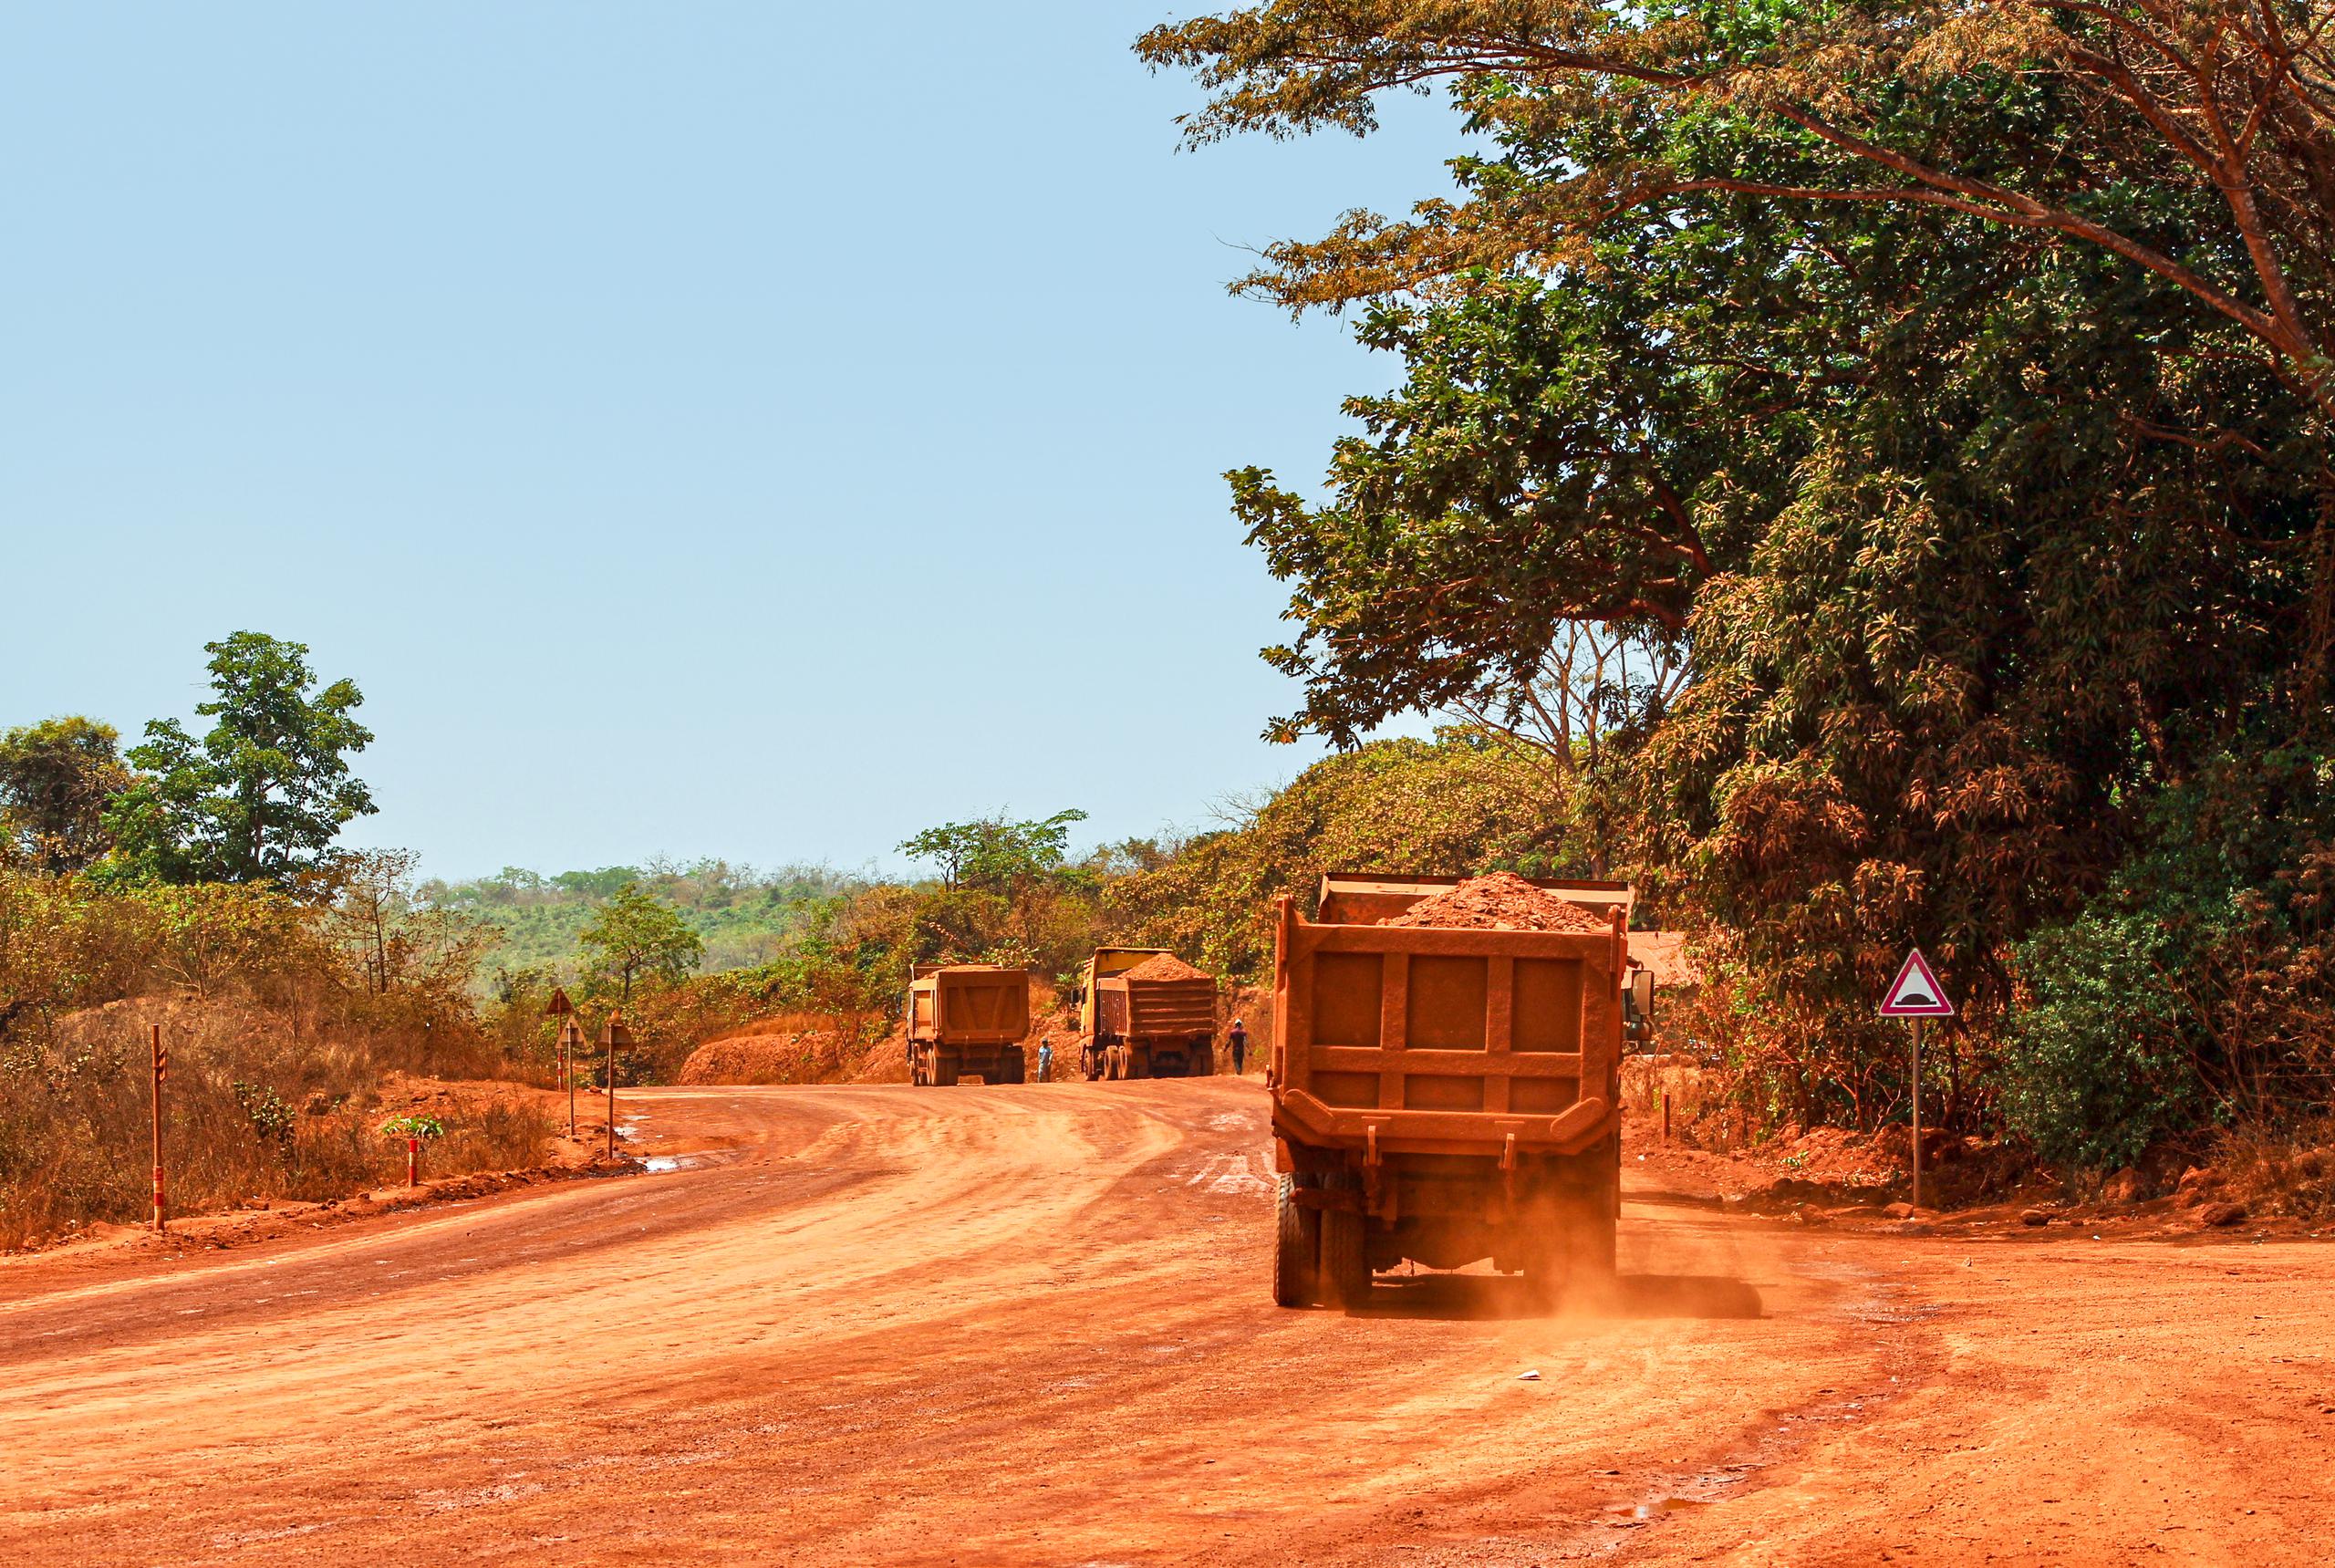 Camiones transportando bauxita por una carretera minera en Guinea. (Genevieve Campbell/UICN)